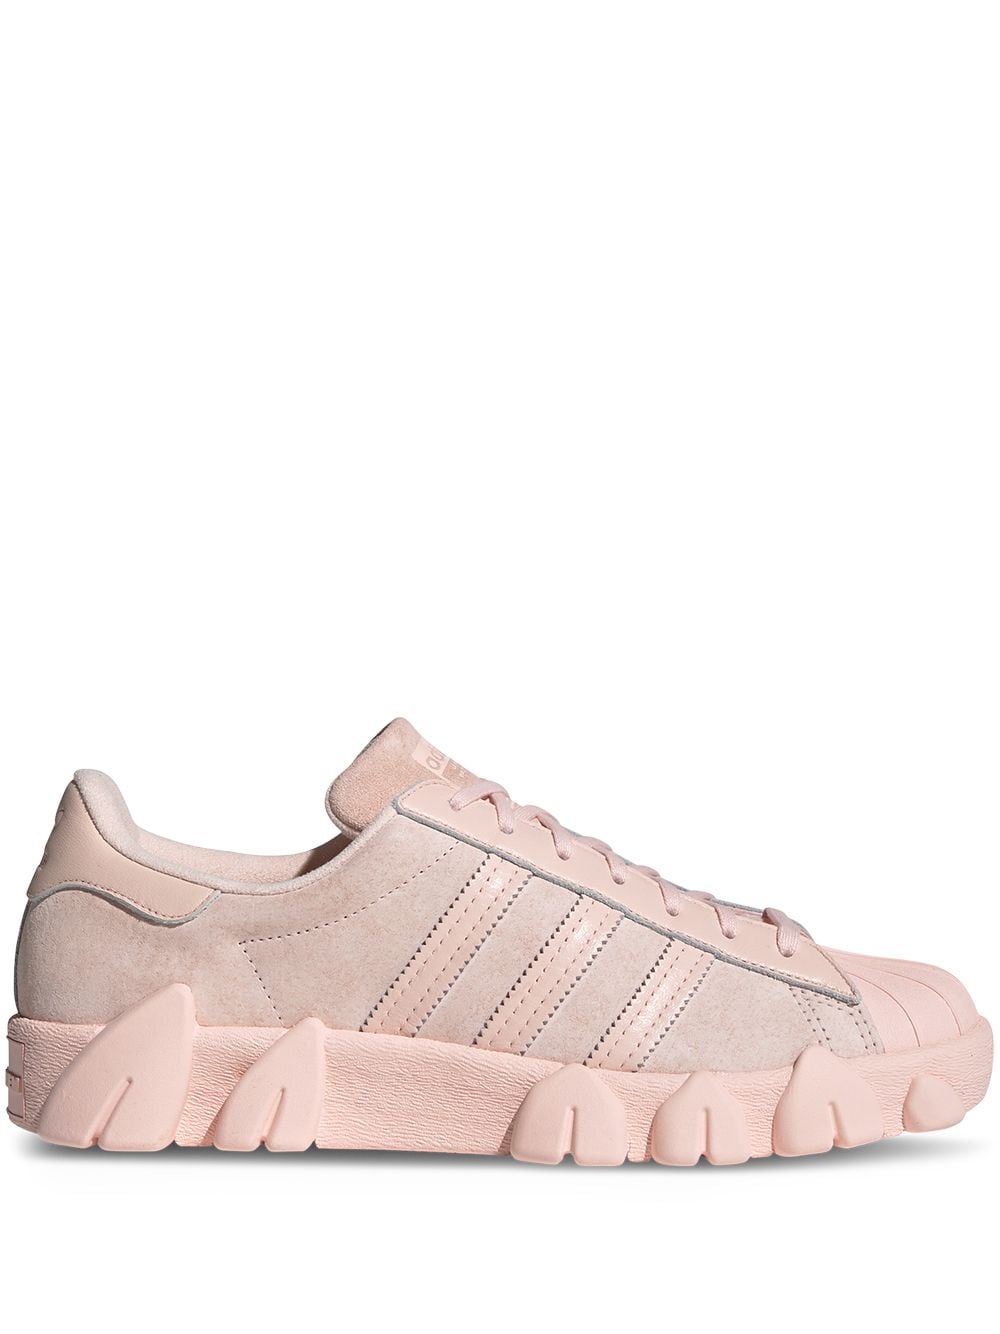 Shop Adidas Originals X Angel Chen Superstar 80s Sneakers In Pink